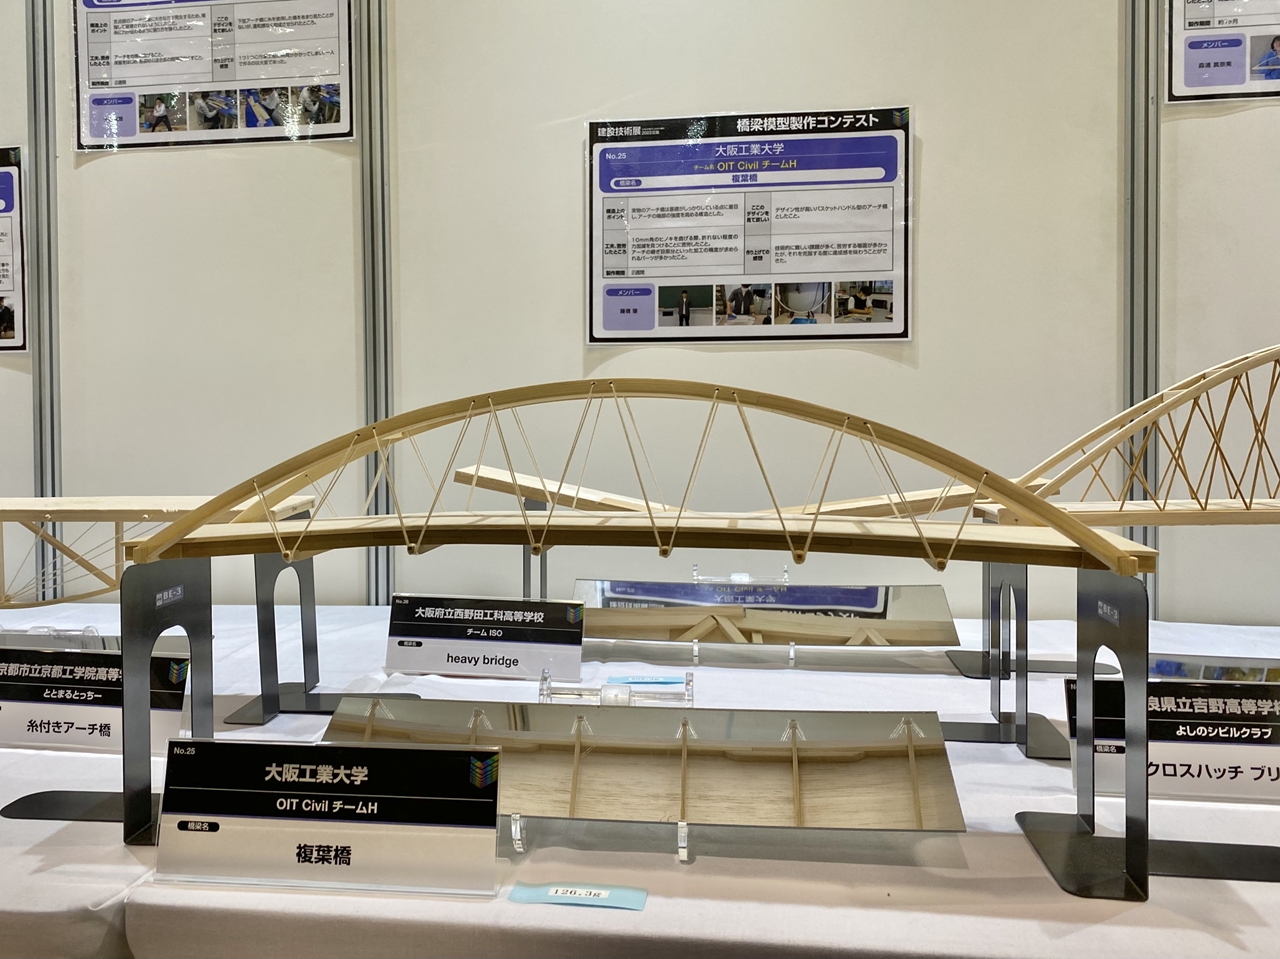 優秀賞を受賞したアーチ橋模型の複葉橋